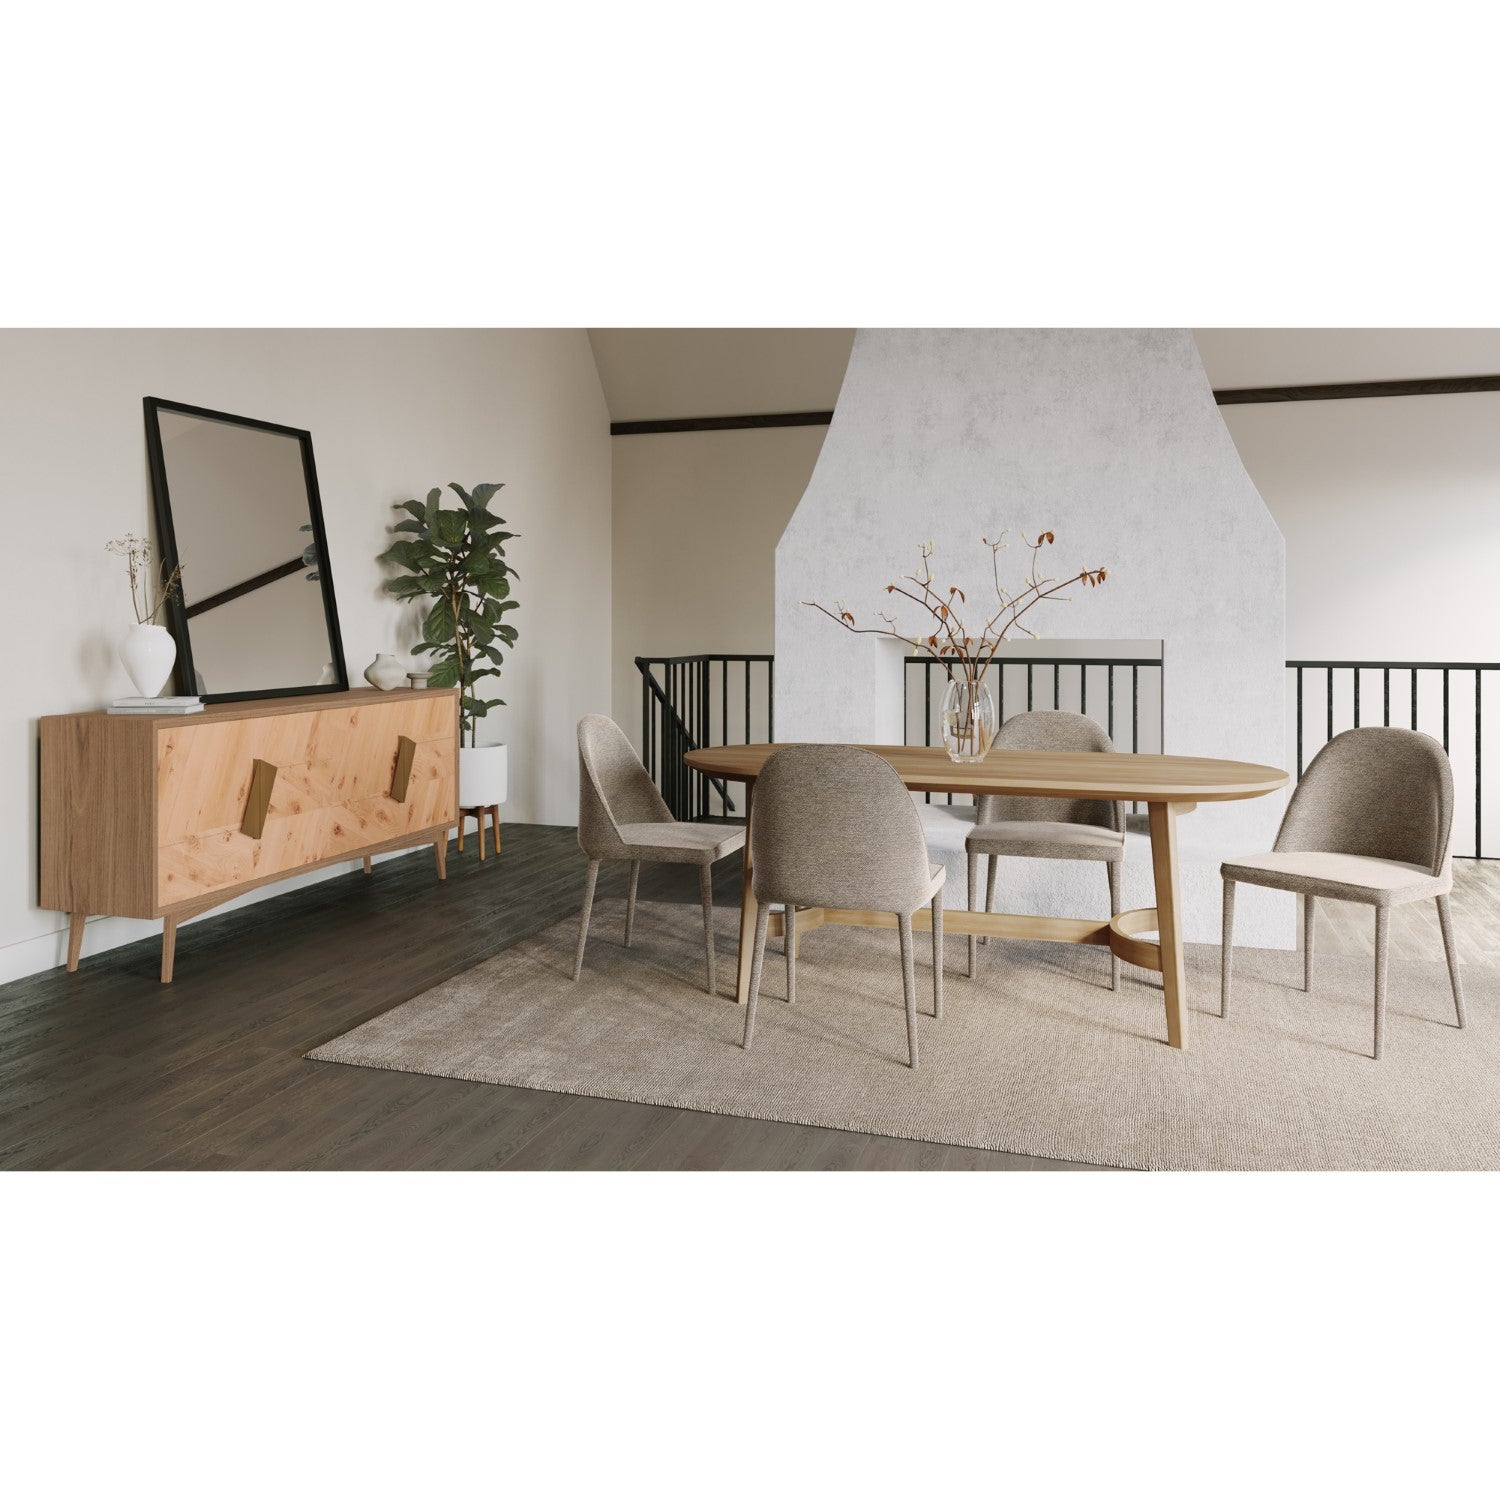 Modern Furniture Online